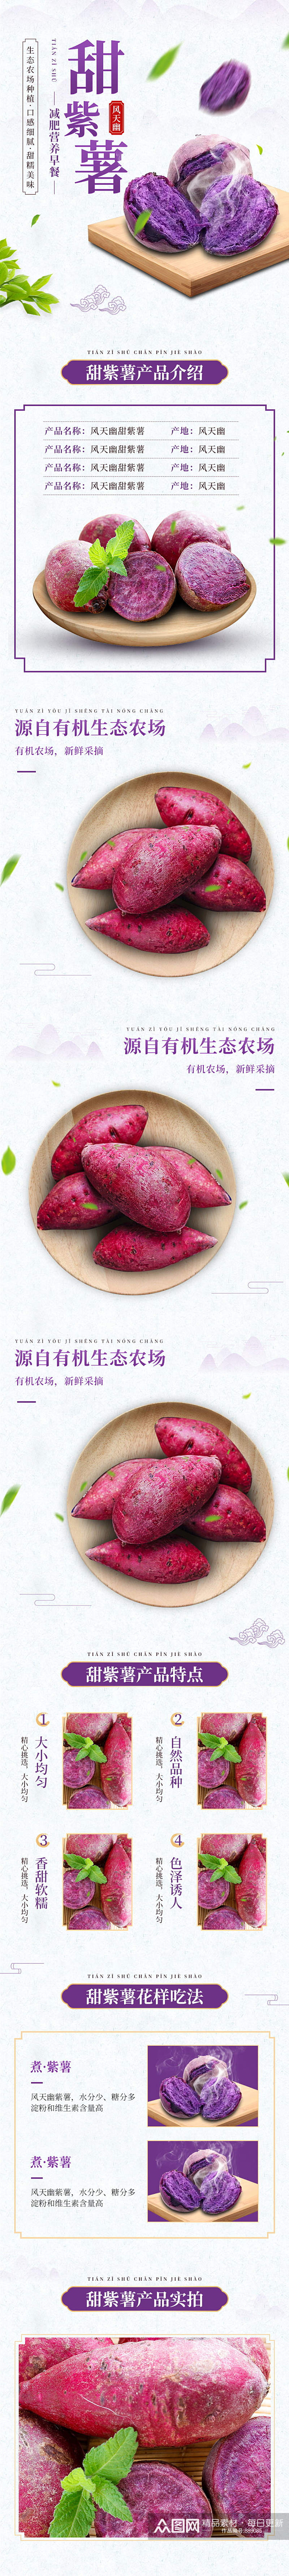 淘宝紫薯红薯详情页模版食品详情页素材